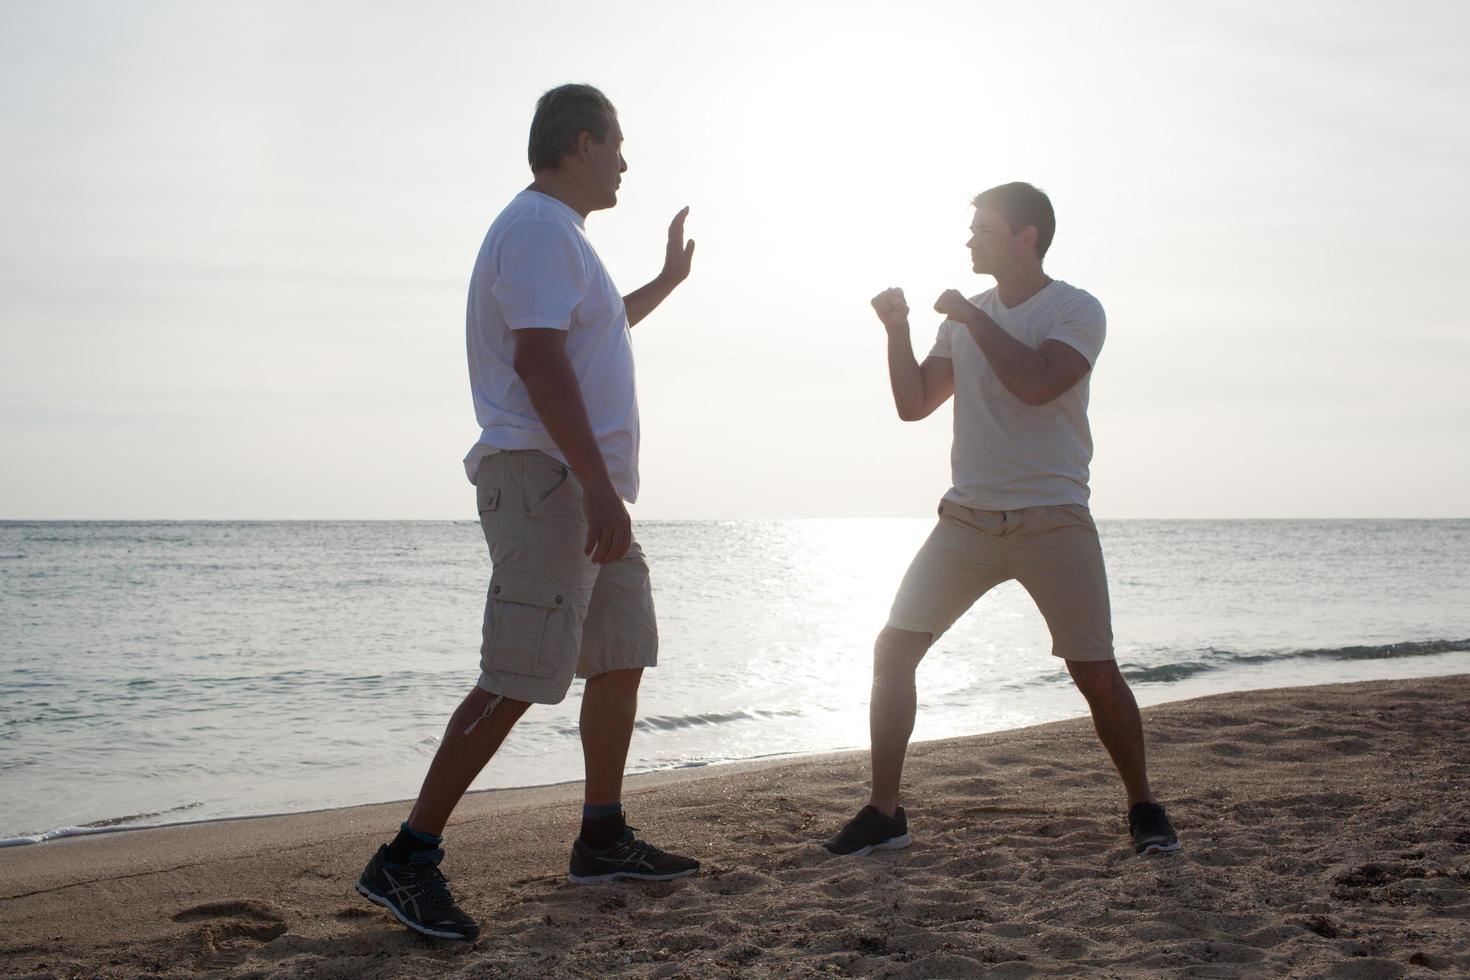 deux hommes s'entraînant sur une plage photo